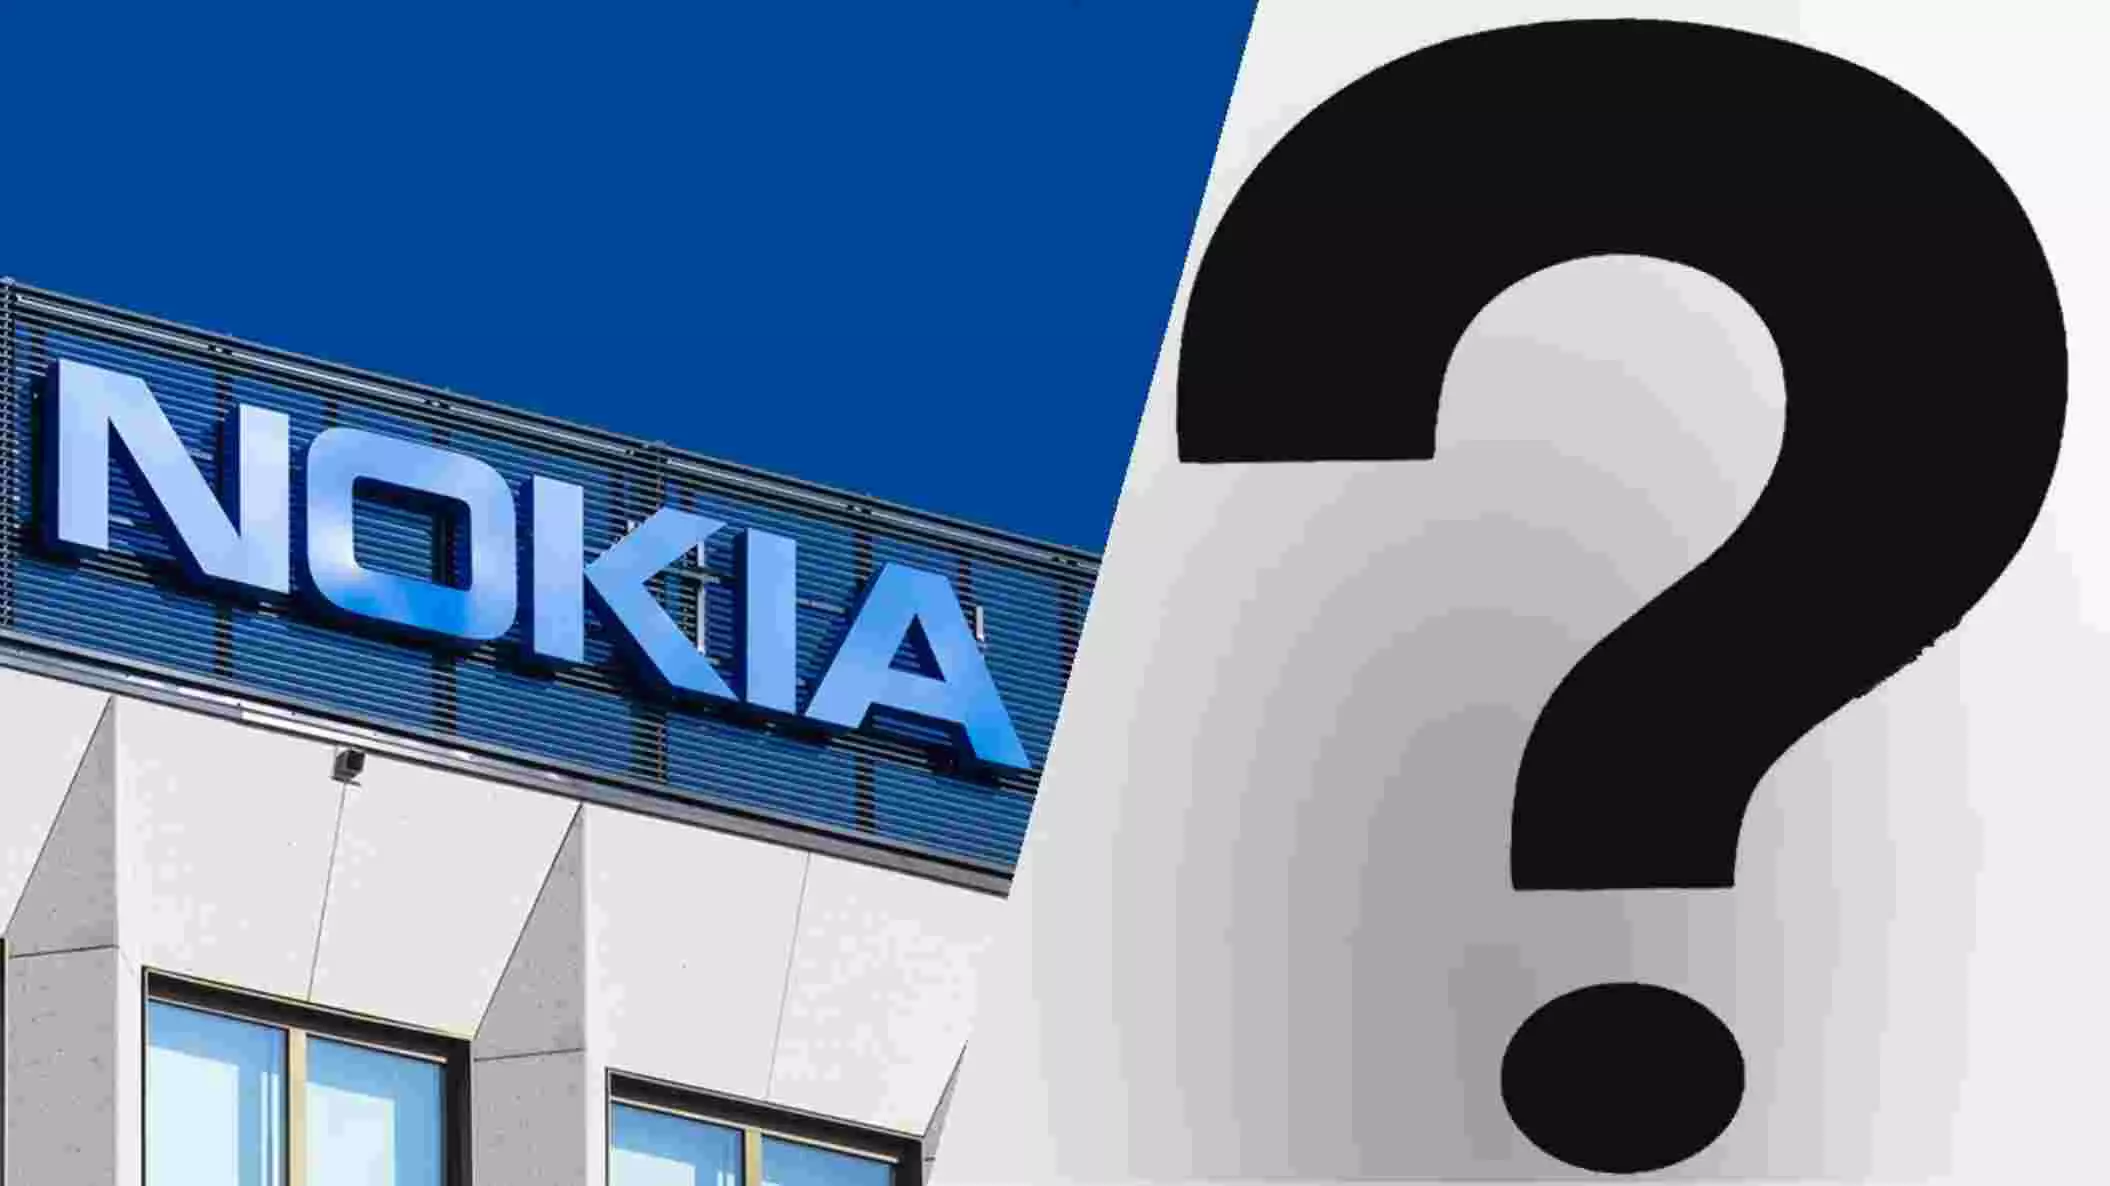 Nokia Logo : नोकिया ने 60 साल में पहली बार बदला अपना लोगो, देखिए- अब कैसा है?